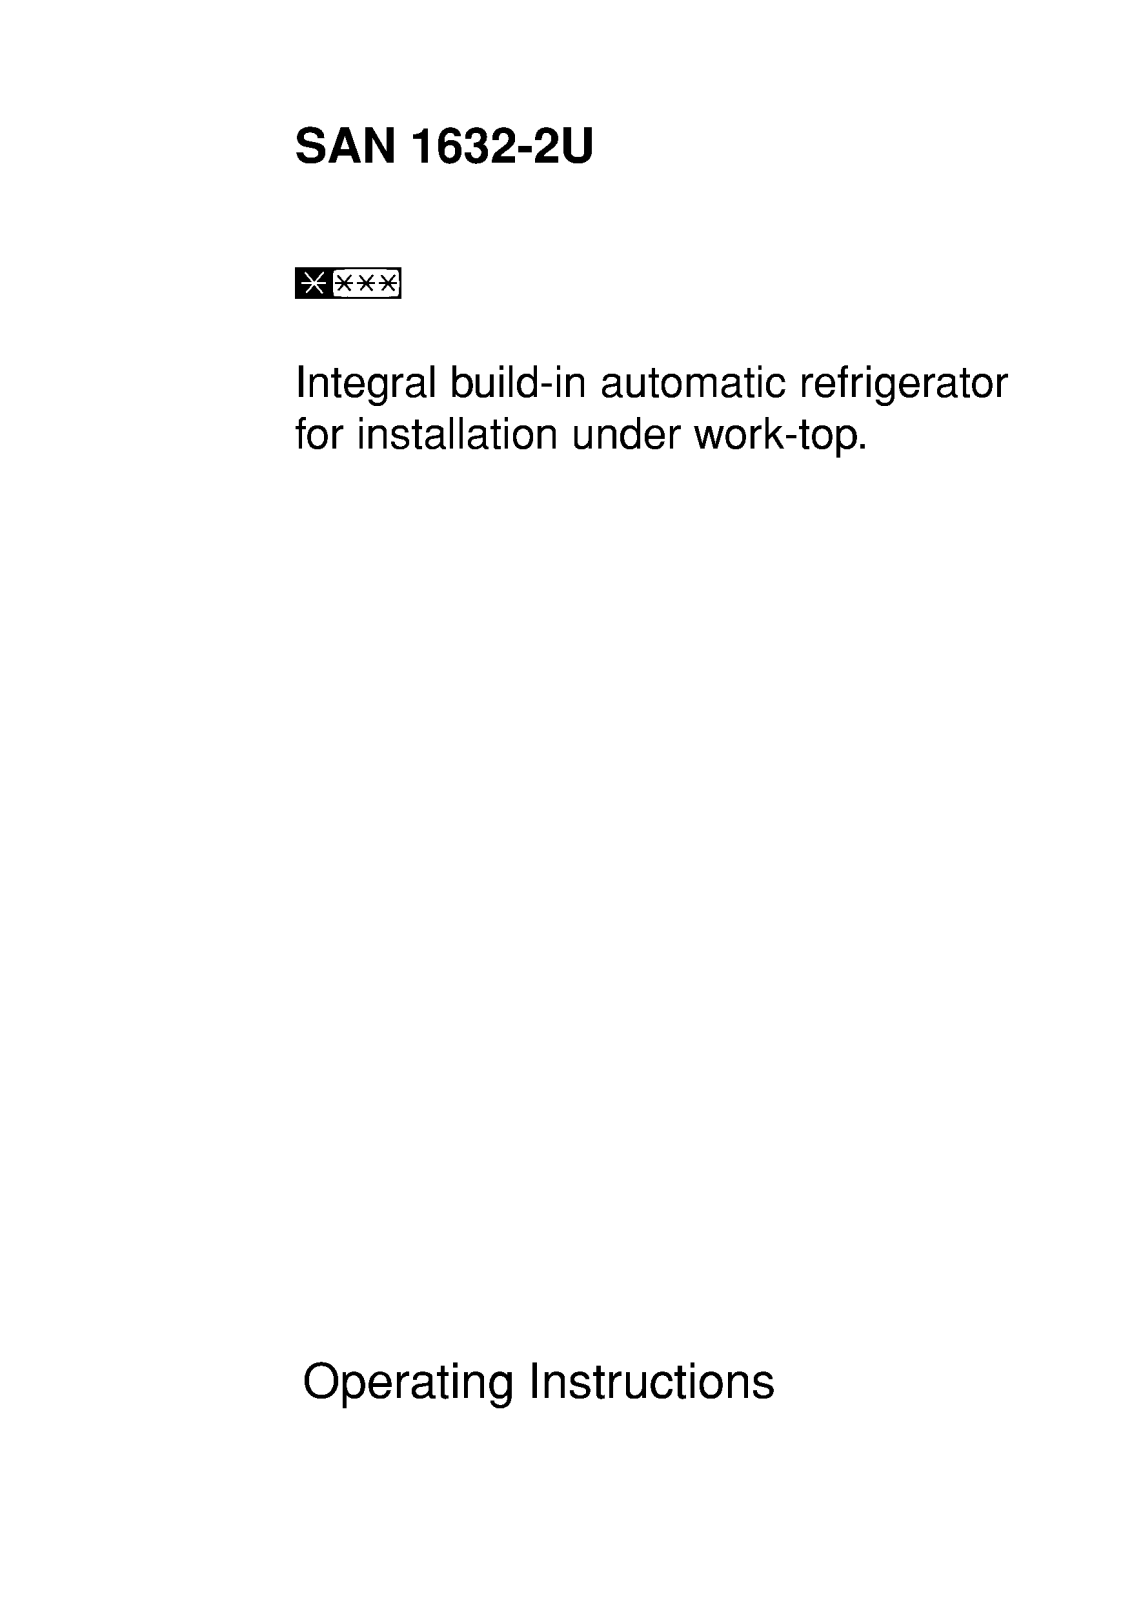 AEG-Electrolux S1632IU, S1632-1U User Manual